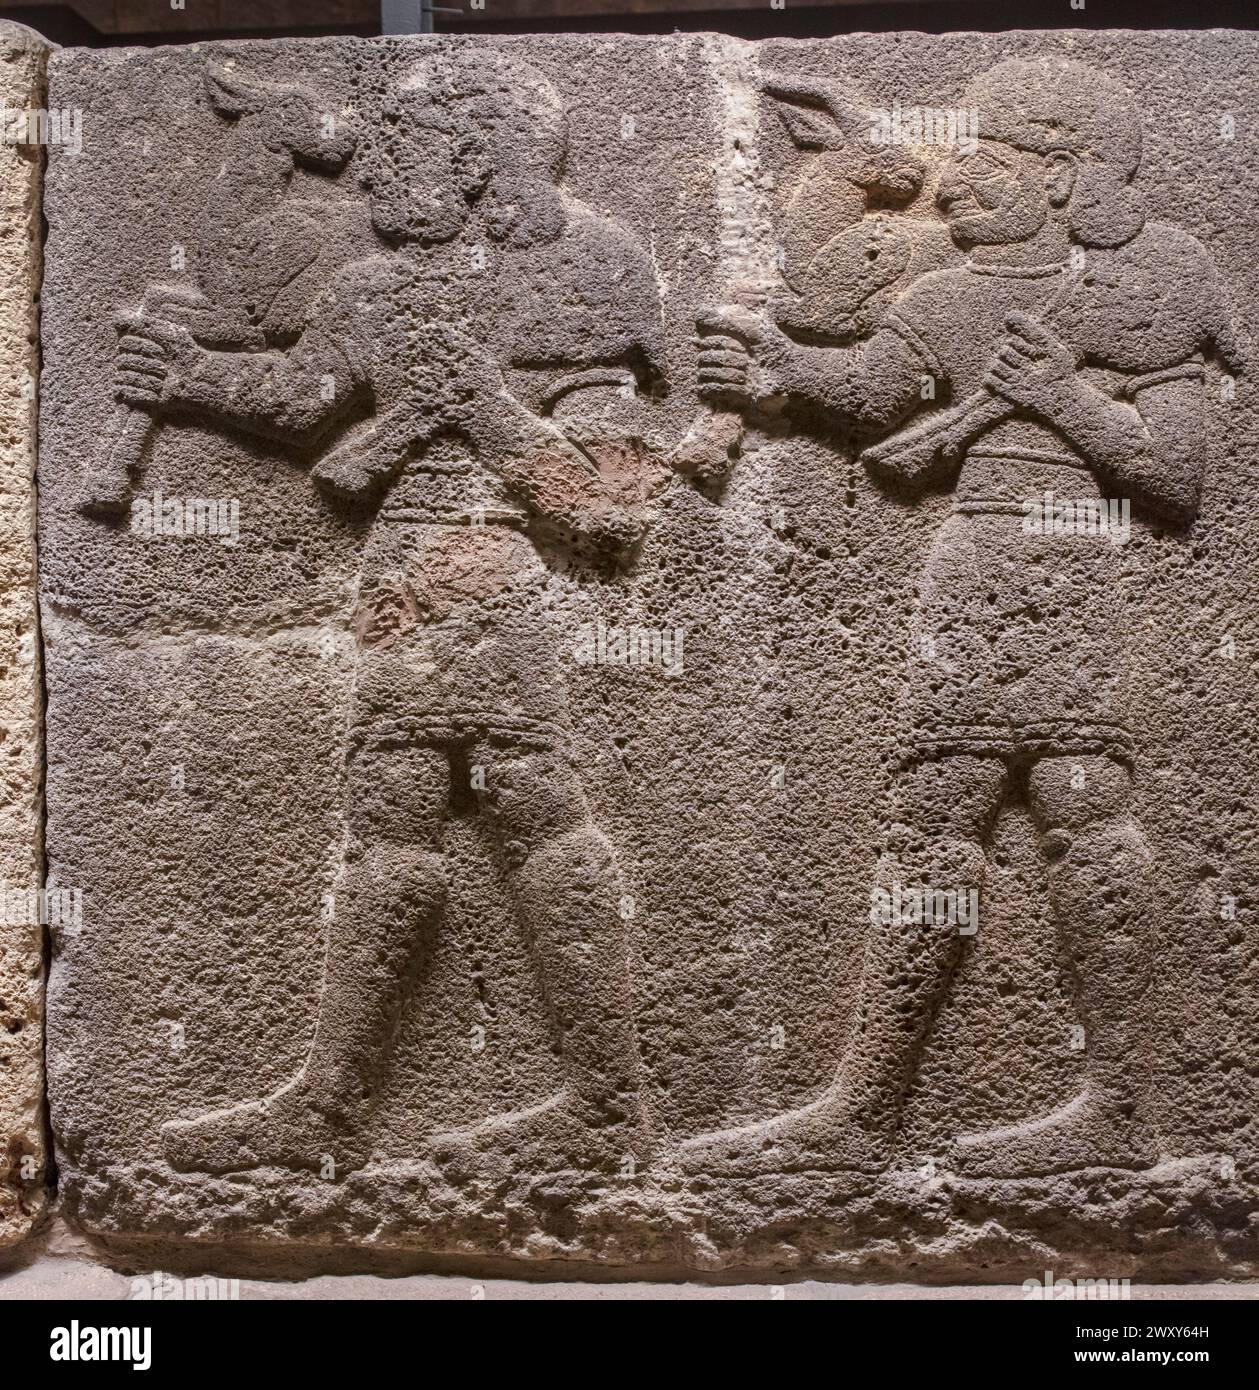 Relieve con procesión ritual, siglo IX a.C., basalto, Museo de Civilizaciones Anatolianas, Ankara, Turquía Foto de stock